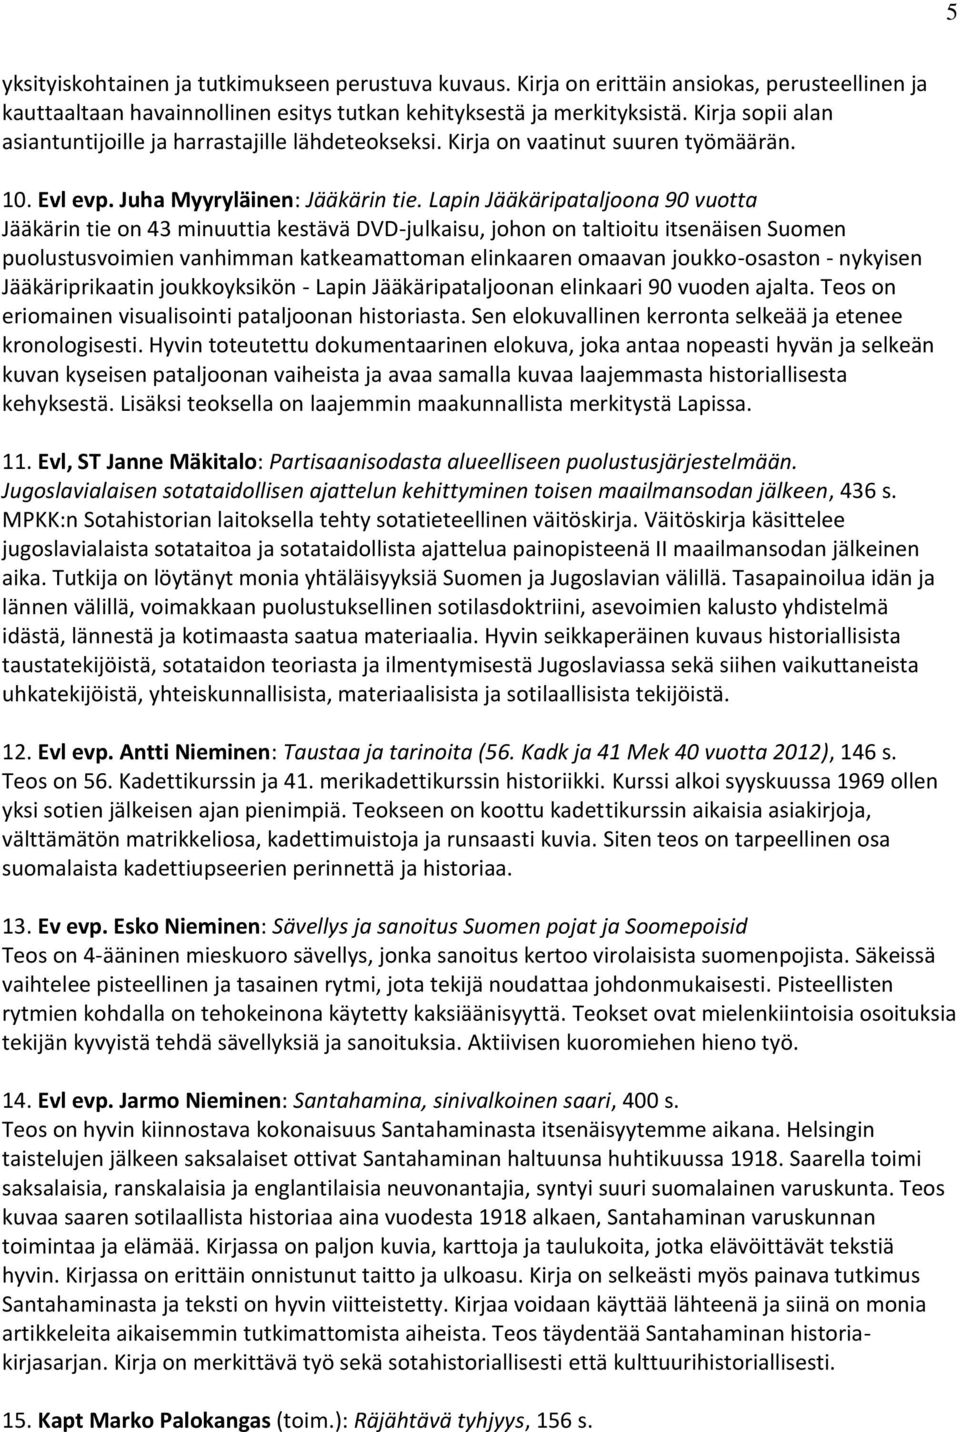 Lapin Jääkäripataljoona 90 vuotta Jääkärin tie on 43 minuuttia kestävä DVD-julkaisu, johon on taltioitu itsenäisen Suomen puolustusvoimien vanhimman katkeamattoman elinkaaren omaavan joukko-osaston -